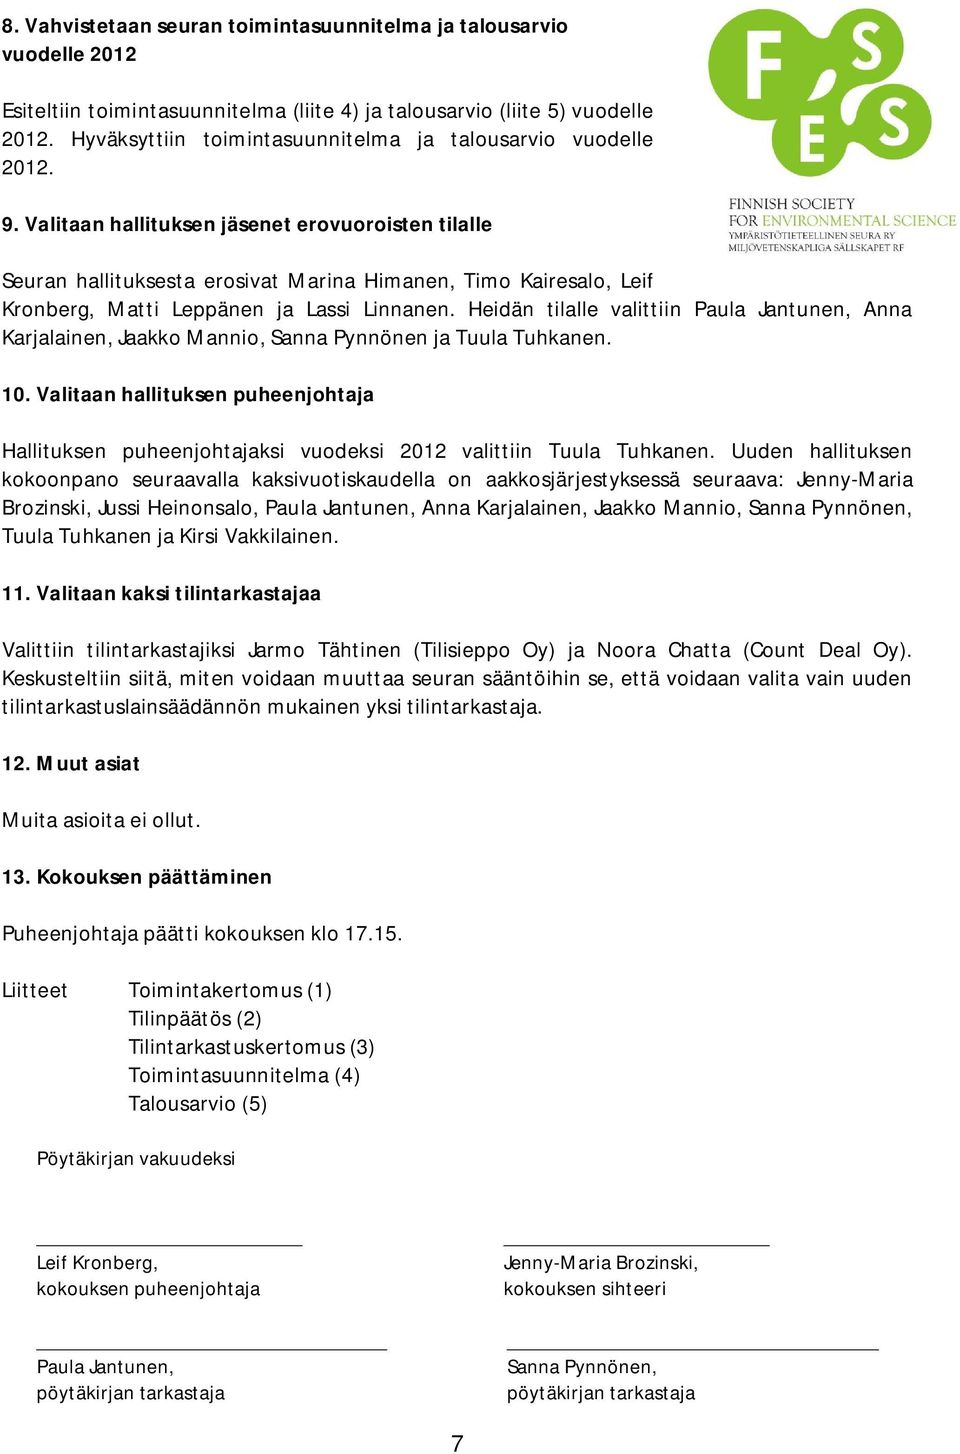 Valitaan hallituksen jäsenet erovuoroisten tilalle Seuran hallituksesta erosivat Marina Himanen, Timo Kairesalo, Leif Kronberg, Matti Leppänen ja Lassi Linnanen.